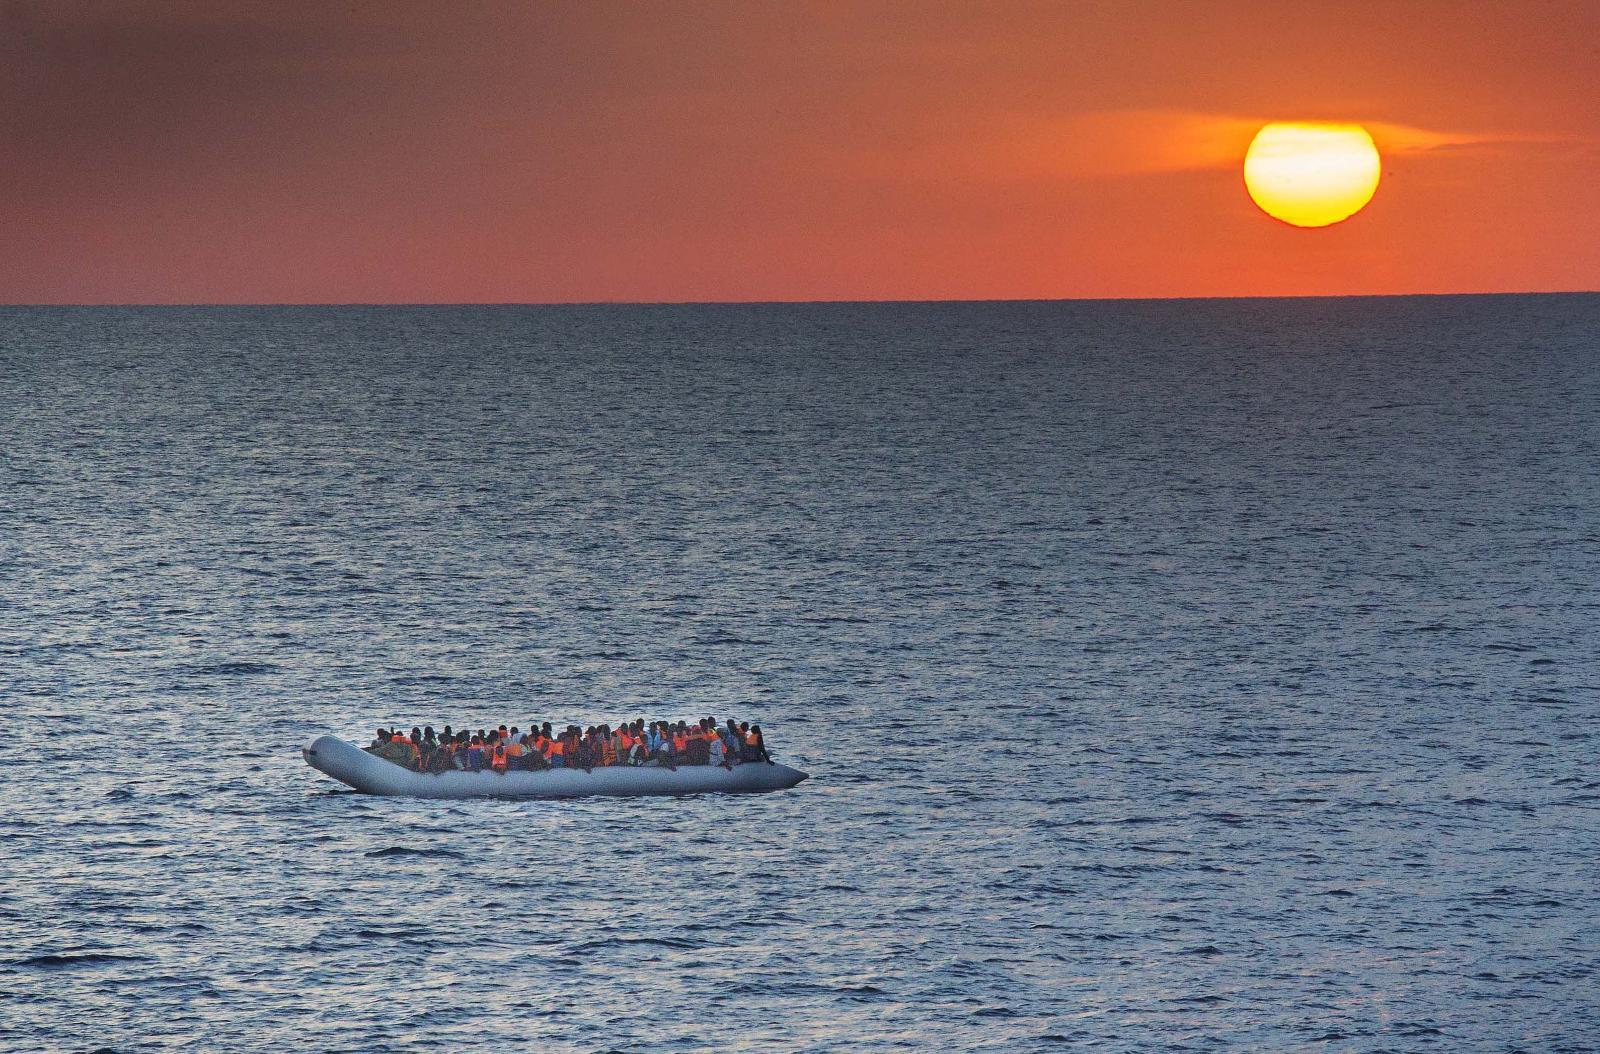 123 flyktninger satt presset sammen i gummibåten da det norske redningsskipet hentet dem opp i kveldstimene. Gummibåtene er livsfarlige. Ifølge den italienske kystvakten er de ikke laget for å tåle overfarten. Båtene er lange, smale og ustabile. De produseres i Kina og smugles til Libya, der menneskesmuglerne kjøper dem. Flyktningene kaller dem ballongbåter.